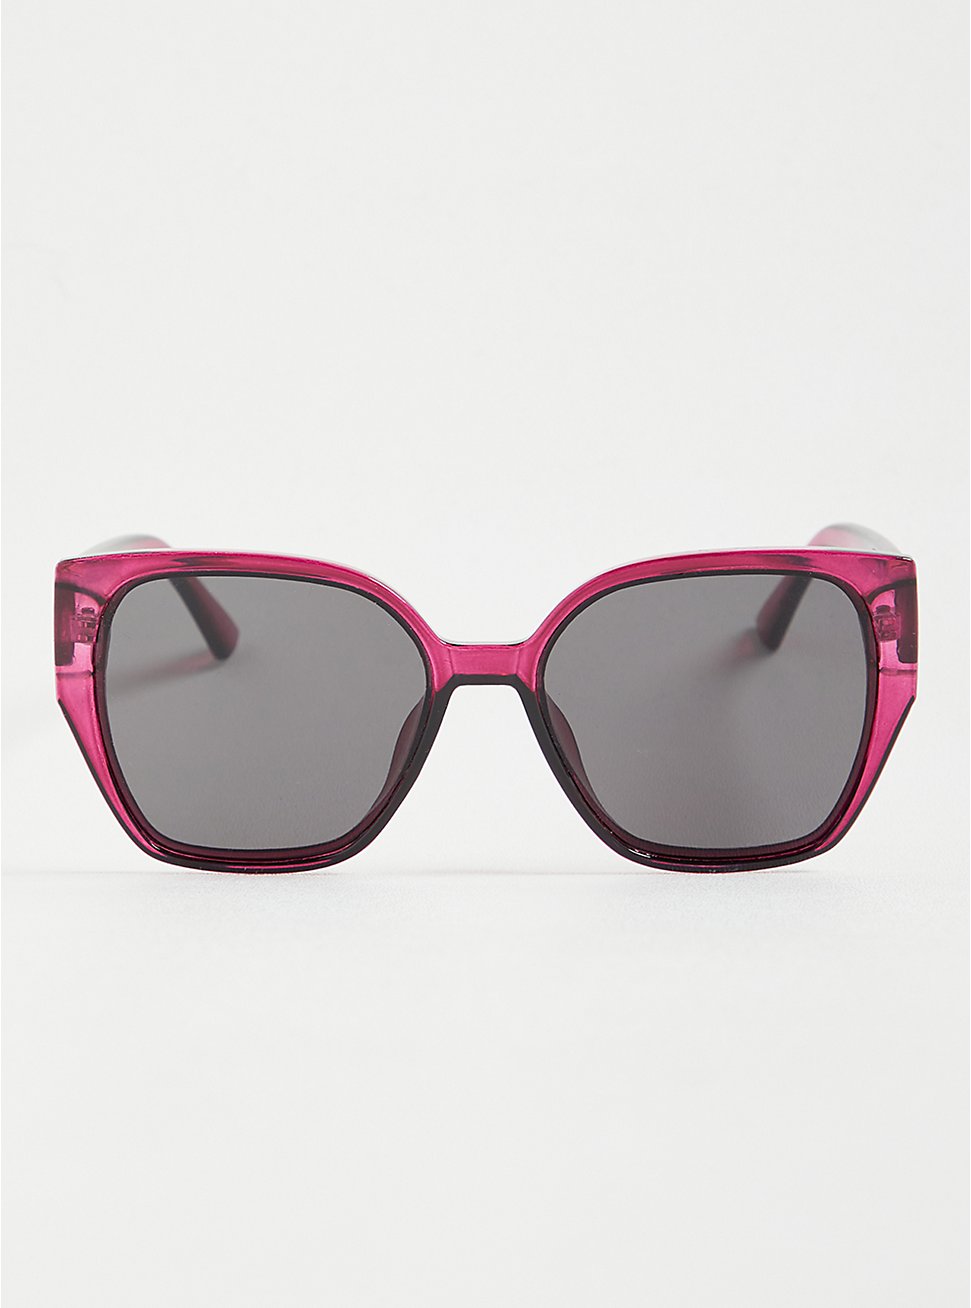 Round Cat Eye Sunglasses - Plum, , hi-res